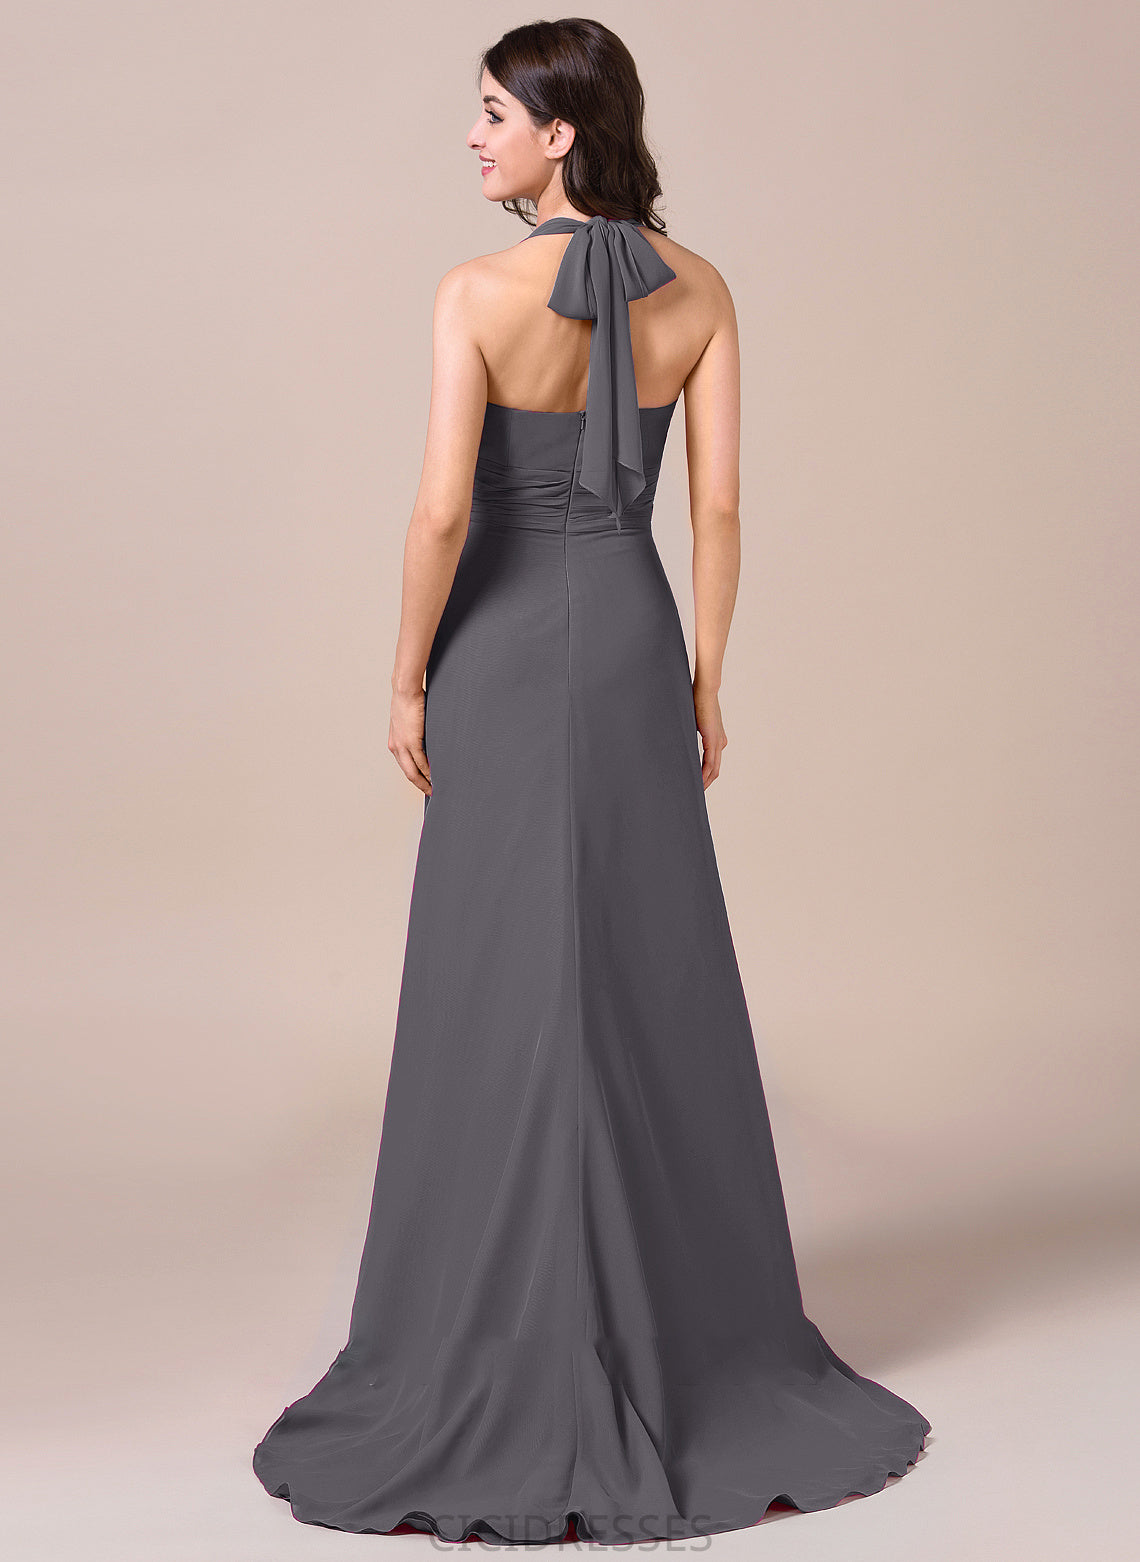 Silhouette A-Line SweepTrain Length Fabric CascadingRuffles Bow(s) Neckline Embellishment Halter Melanie Straps Bridesmaid Dresses